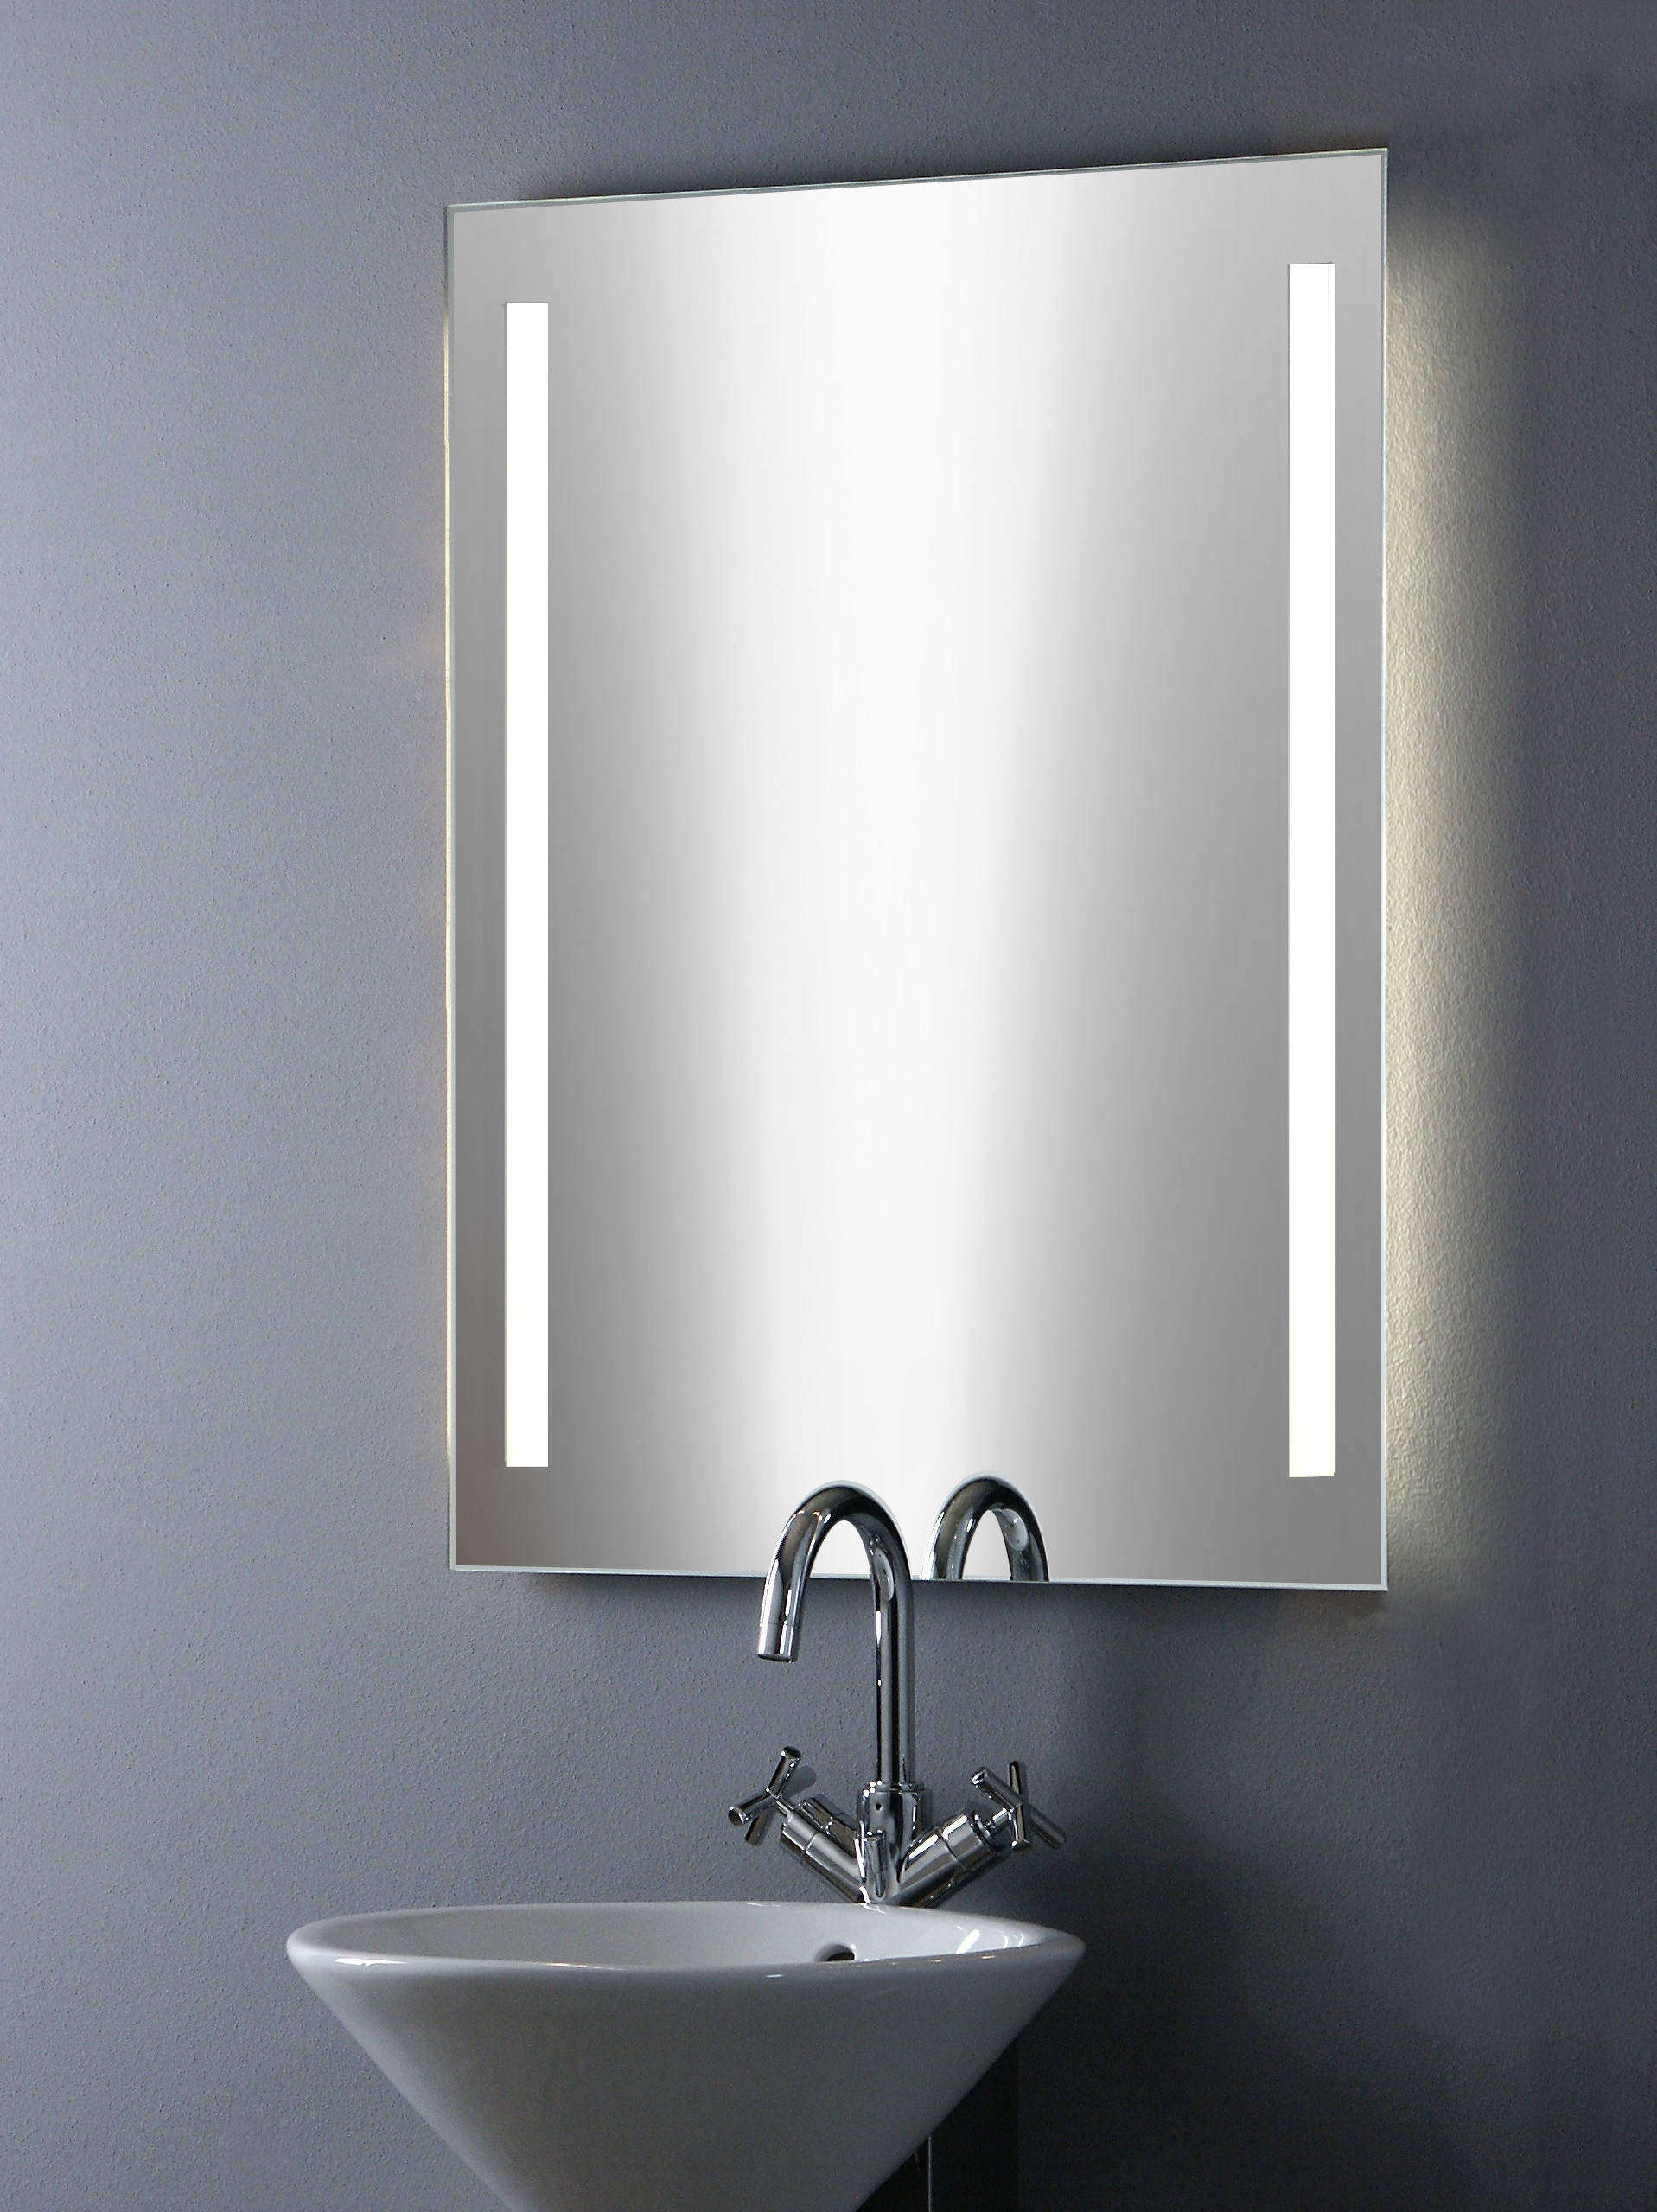 Spiegel Mit Licht
 Badezimmerspiegel mit Beleuchtung